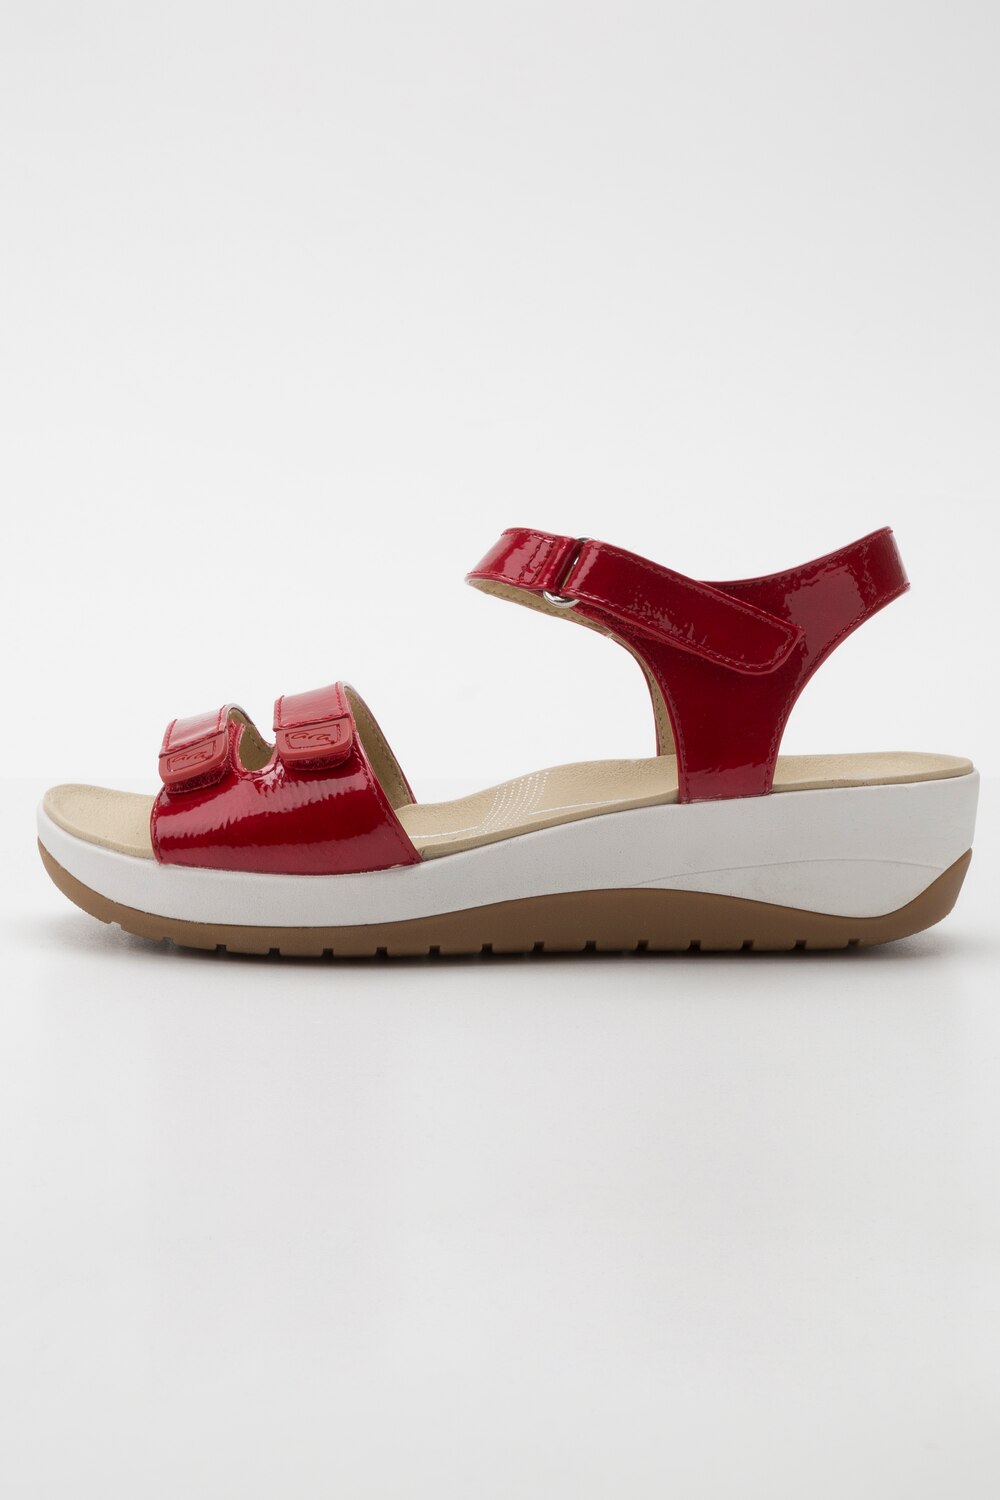 Grote Maten Ara sandaaltjes, Dames, rood, Maat: 38, Synthetische vezels/Overige, Ulla Popken